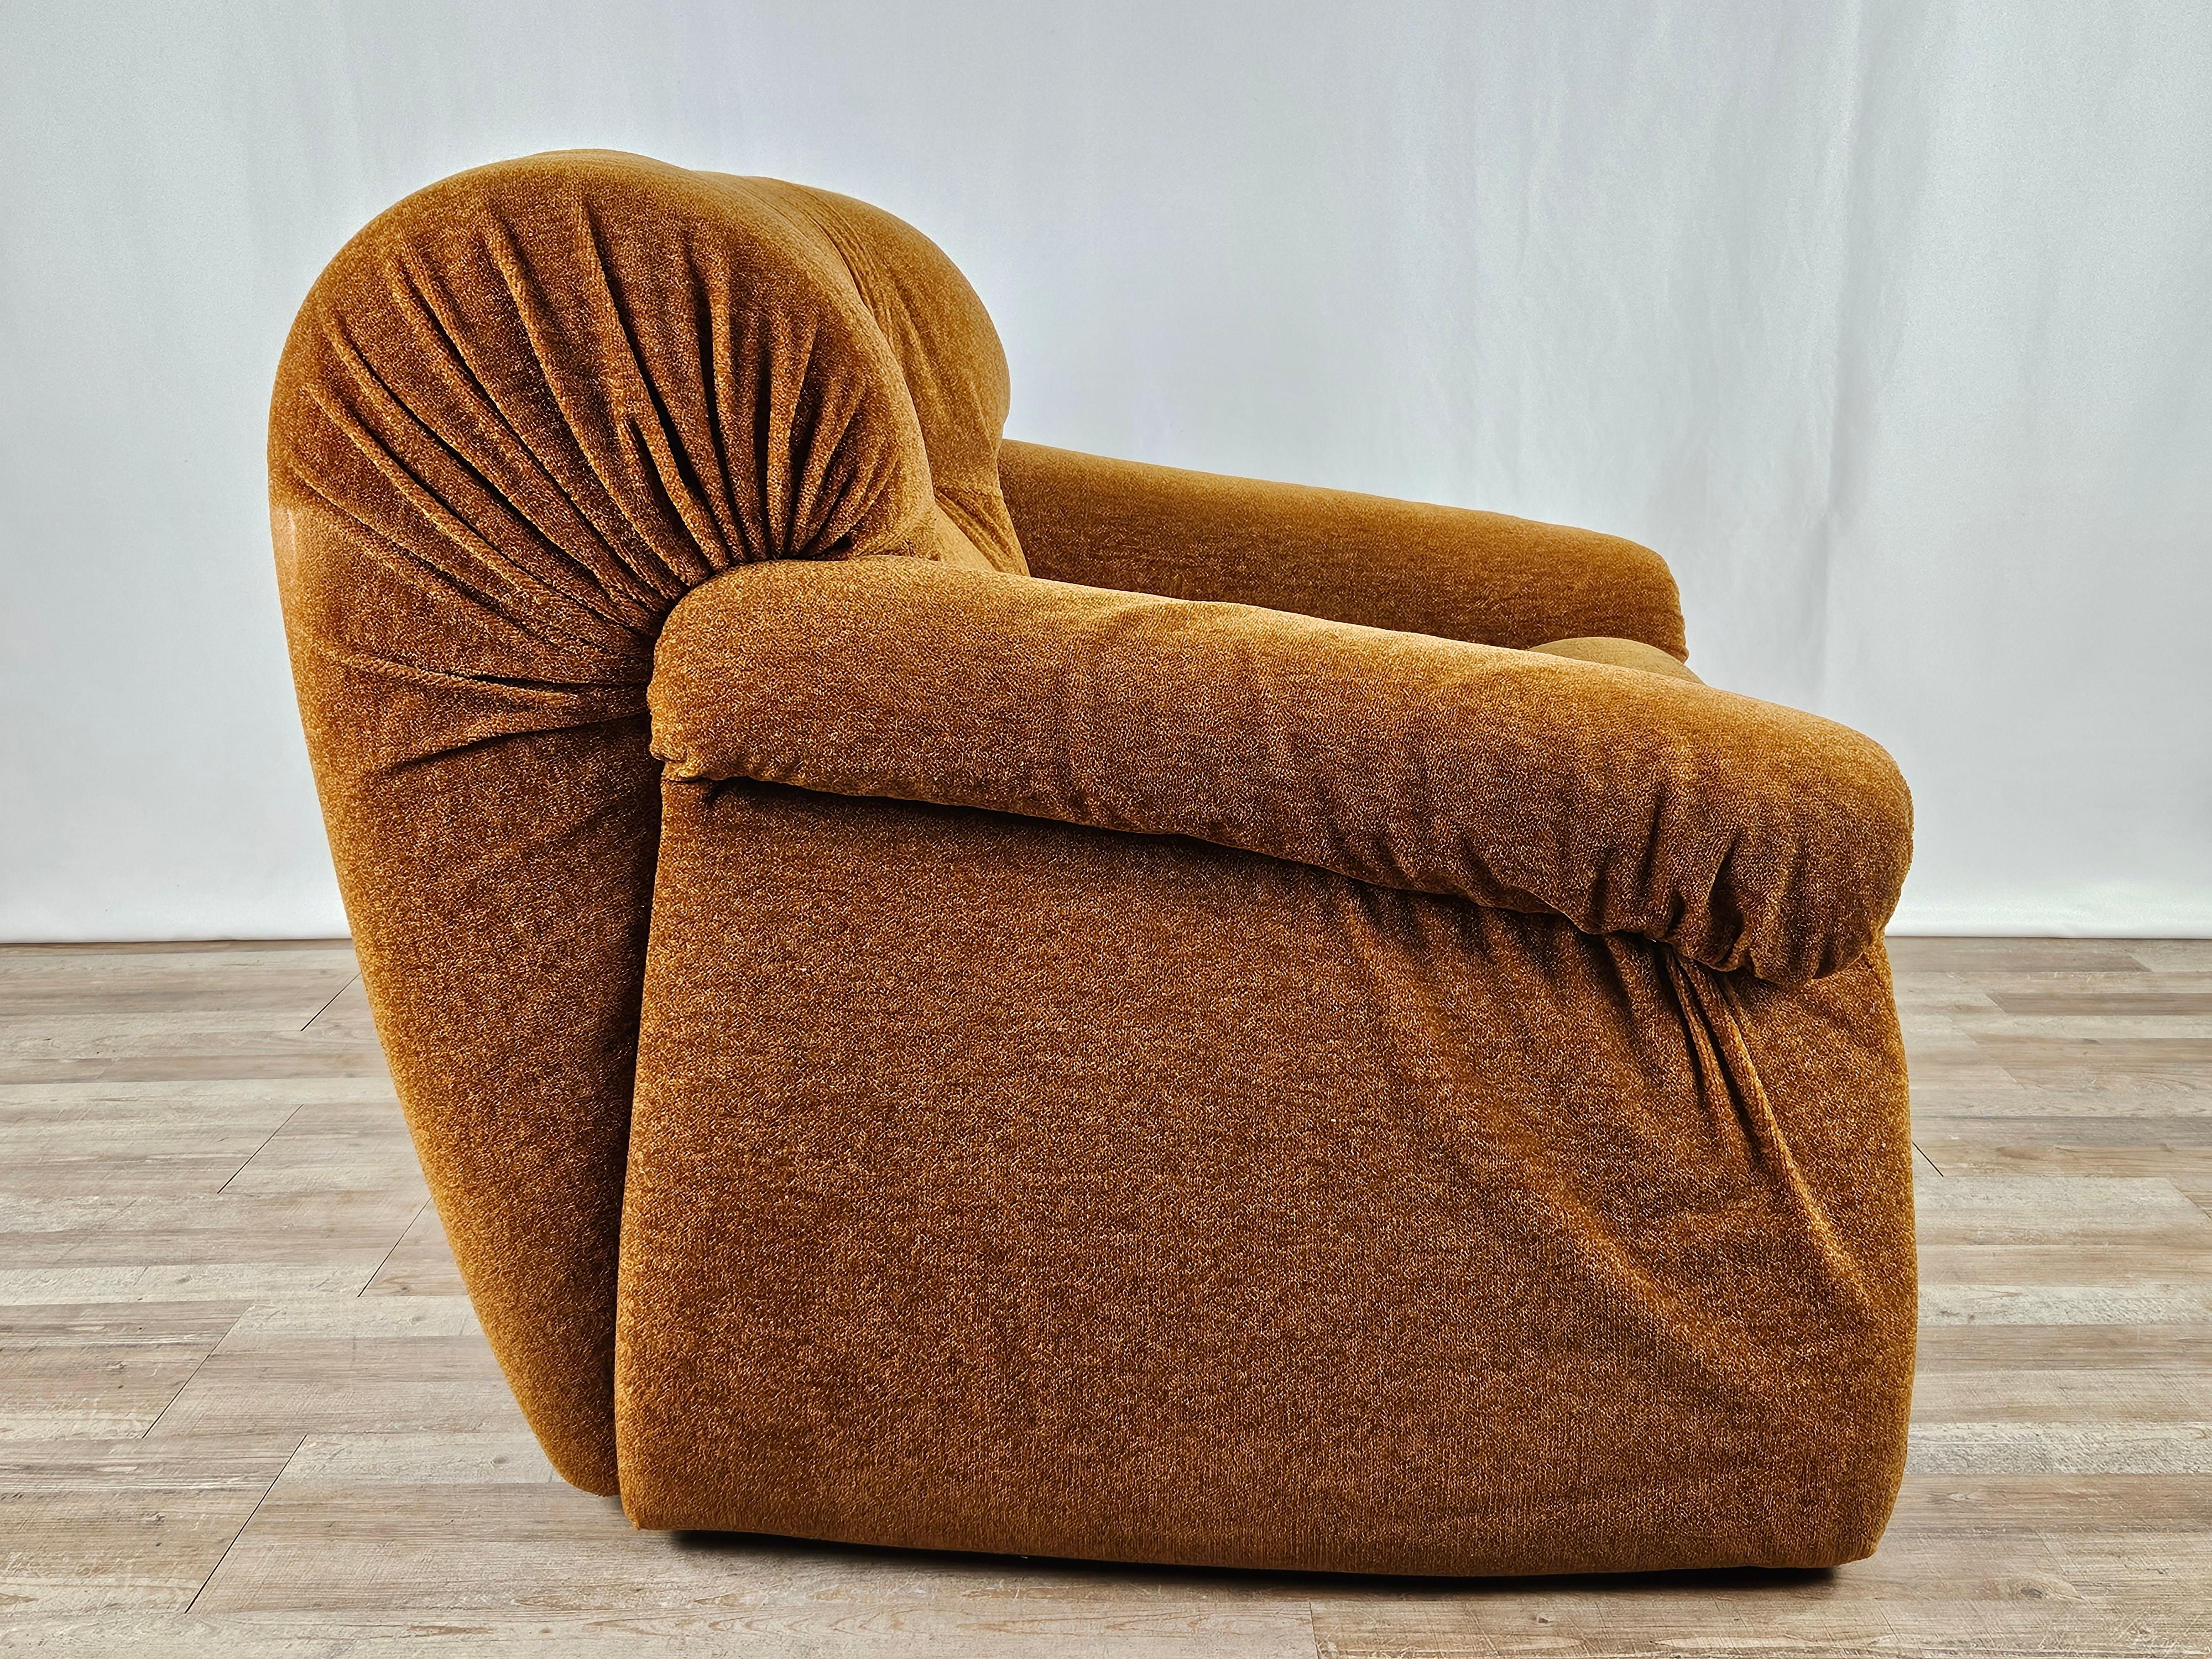 Poltrona di design anni '70, produzione italiana di alta qualità e manifattura della DOIMO Salotti Made in Italy.

Pronta all'uso grazie alla sua comodità e al suo comfort di seduta.

Seduta H 42cm.